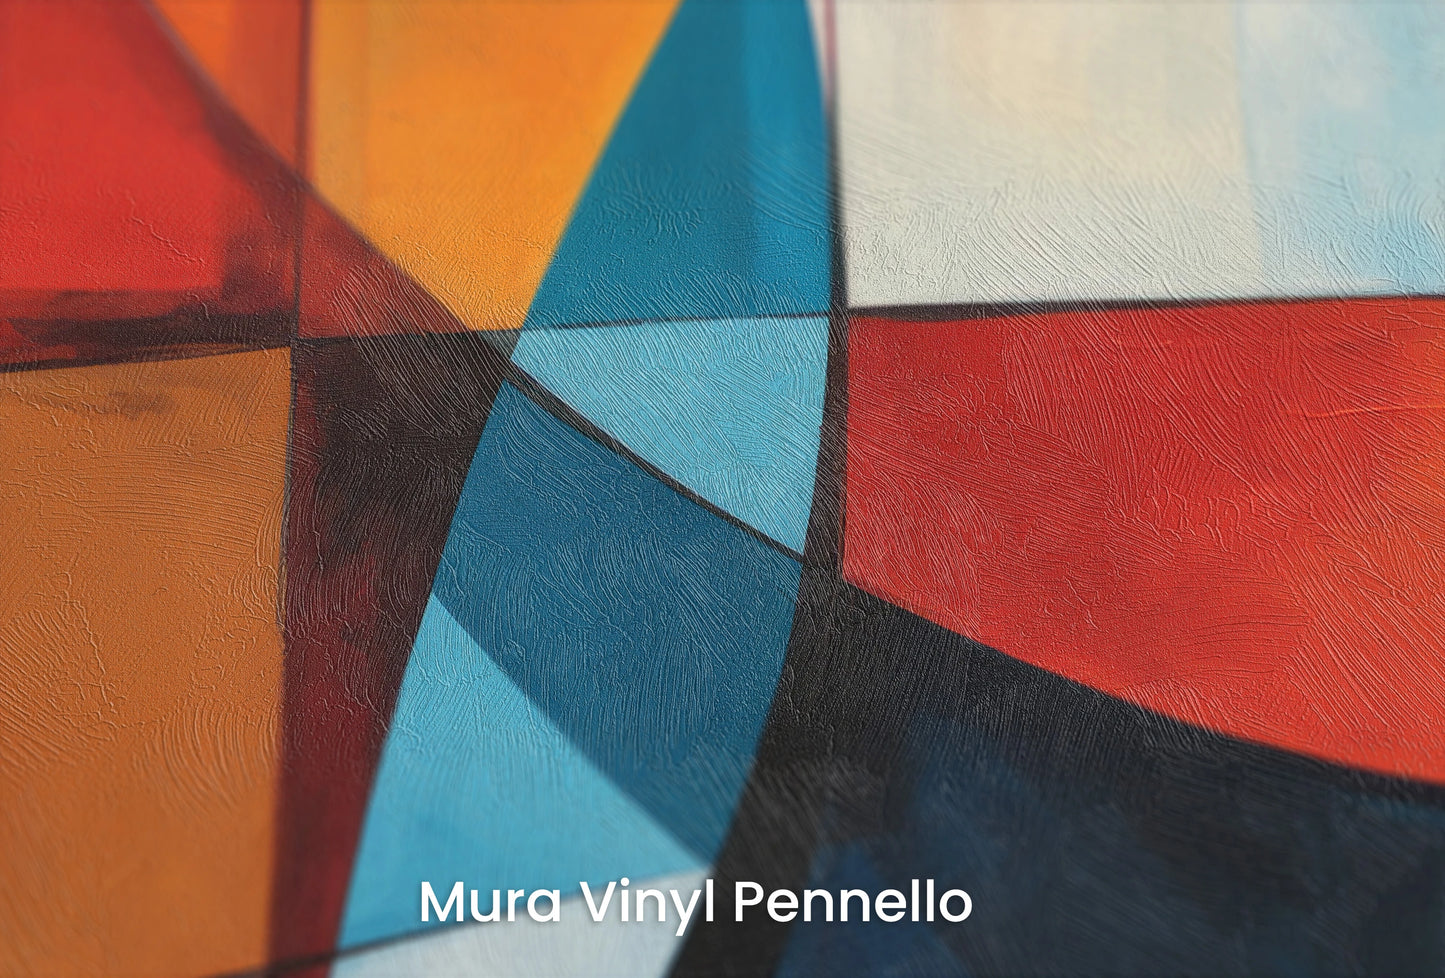 Zbliżenie na artystyczną fototapetę o nazwie Intersecting Orbits na podłożu Mura Vinyl Pennello - faktura pociągnięć pędzla malarskiego.